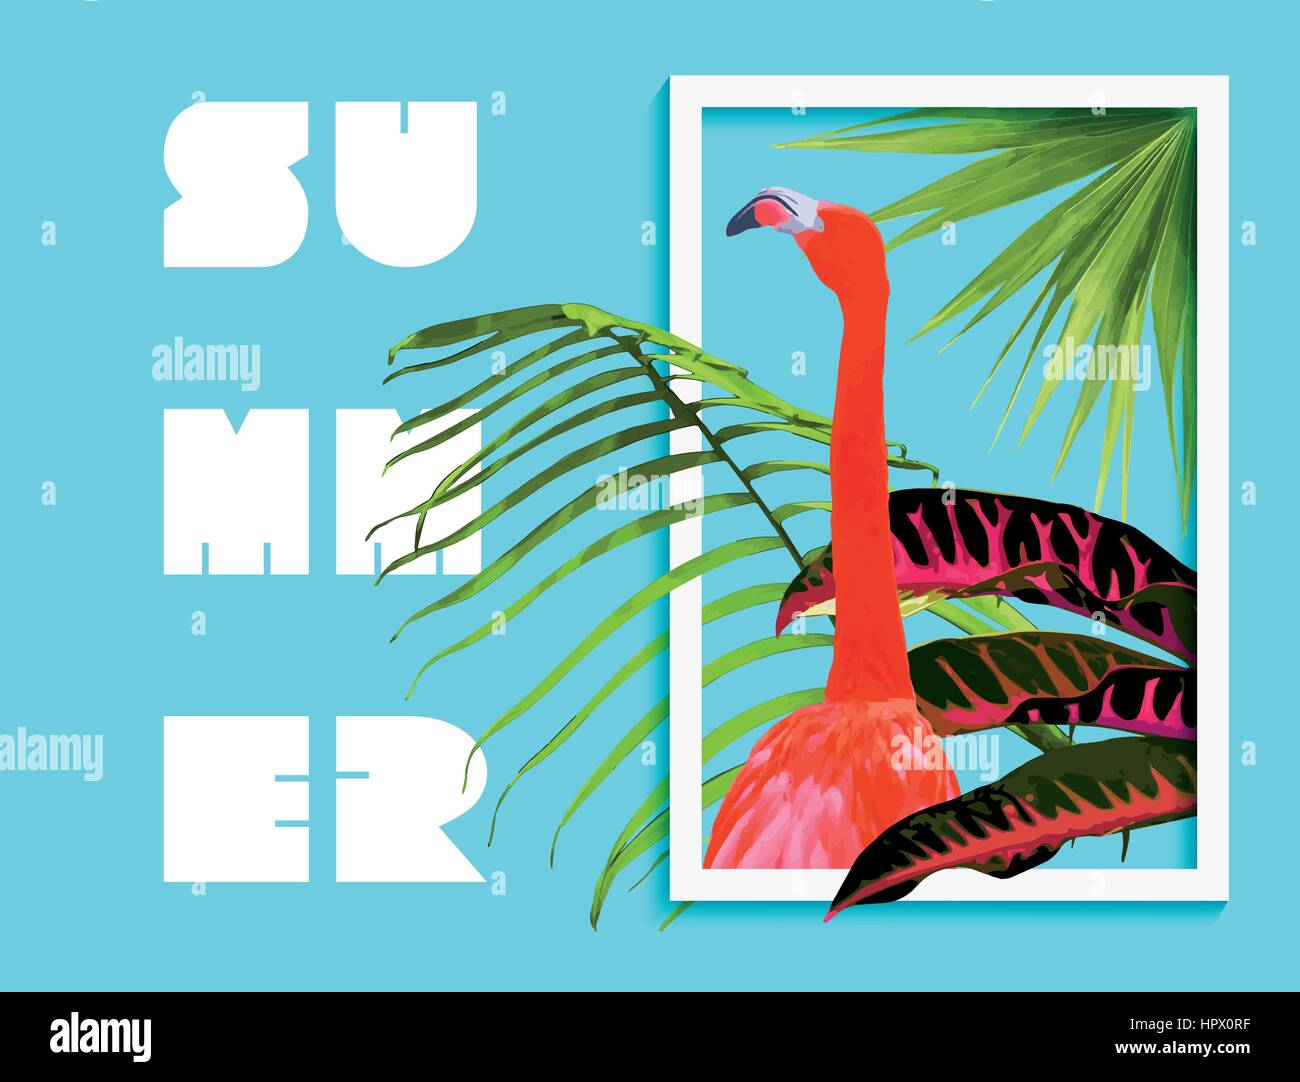 L'estate tropicale arte con la natura nella giungla di decorazione e di flamingo bird all'interno del telaio. Palm tree lascia sfondo, piante esotiche in grafica moderna moda Illustrazione Vettoriale